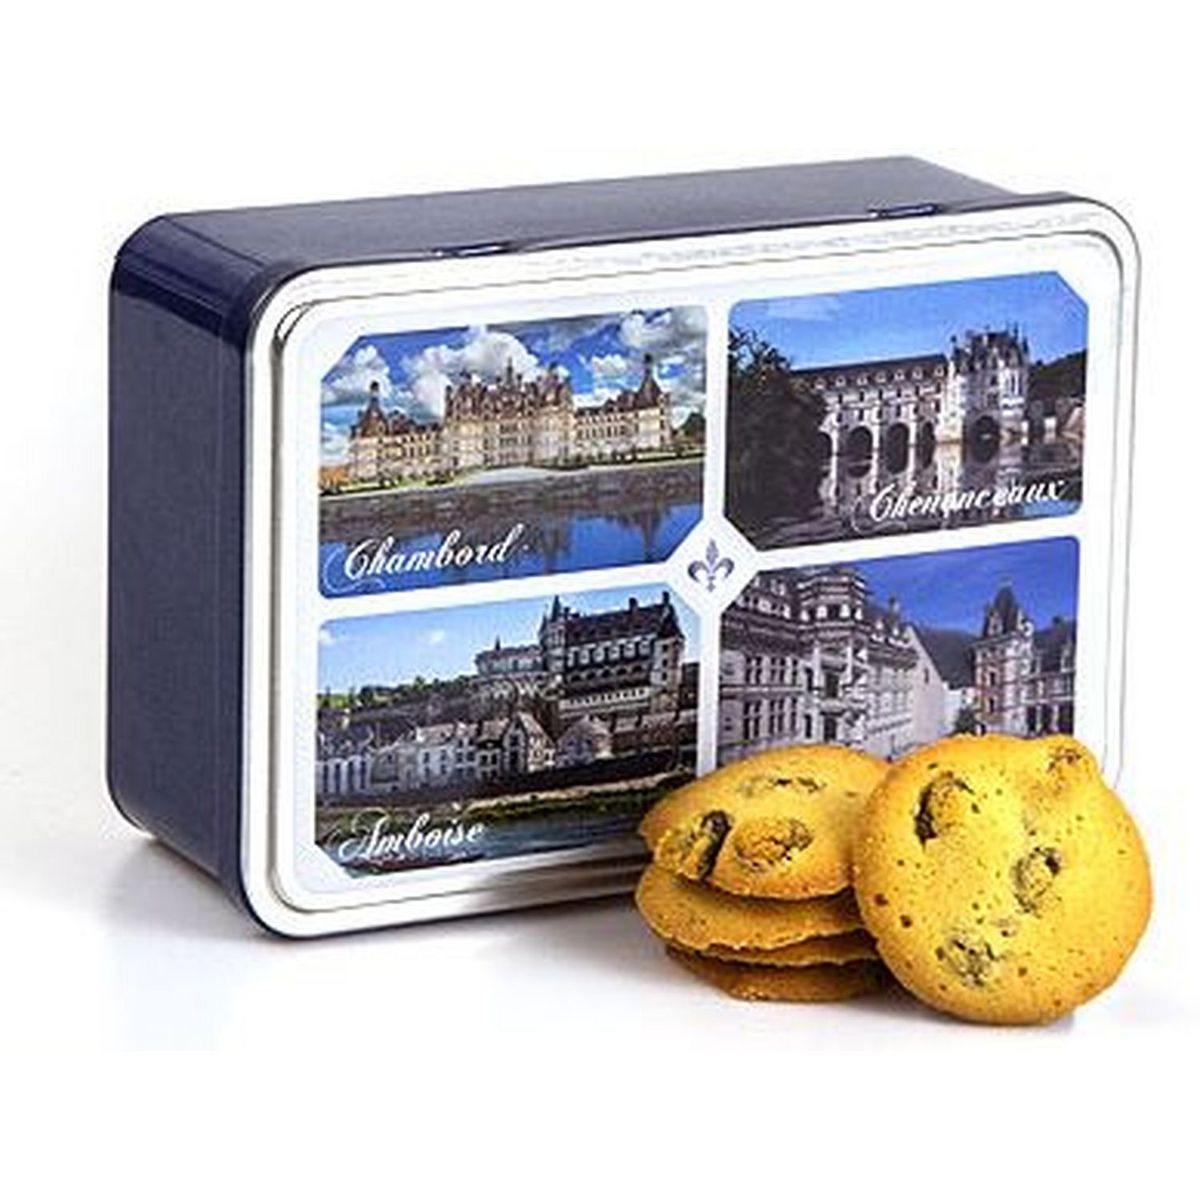 Assortiments de biscuits - boite métal 210g • Boutique Secours